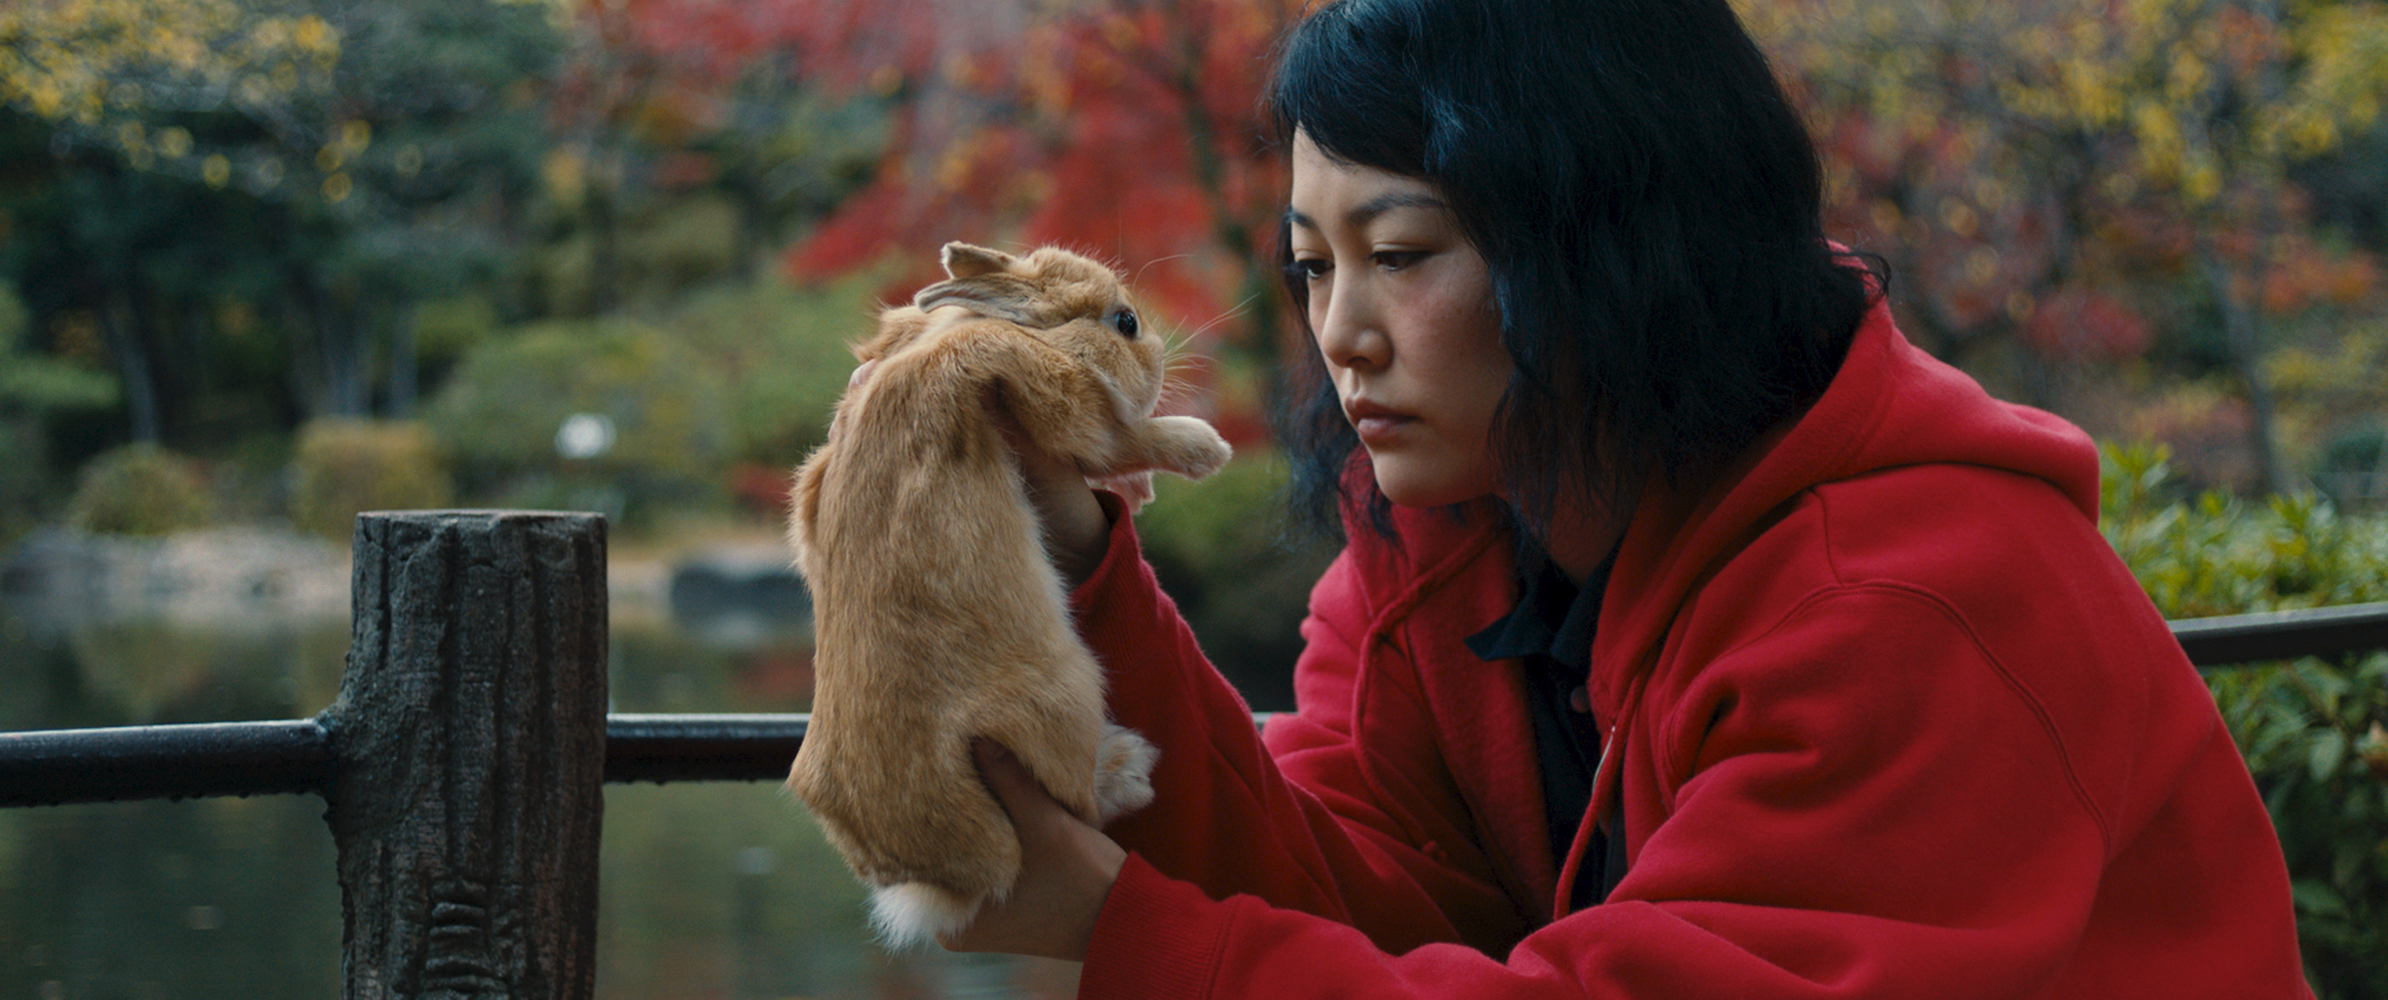 Kumiko, the Treasure Hunter Movie Review